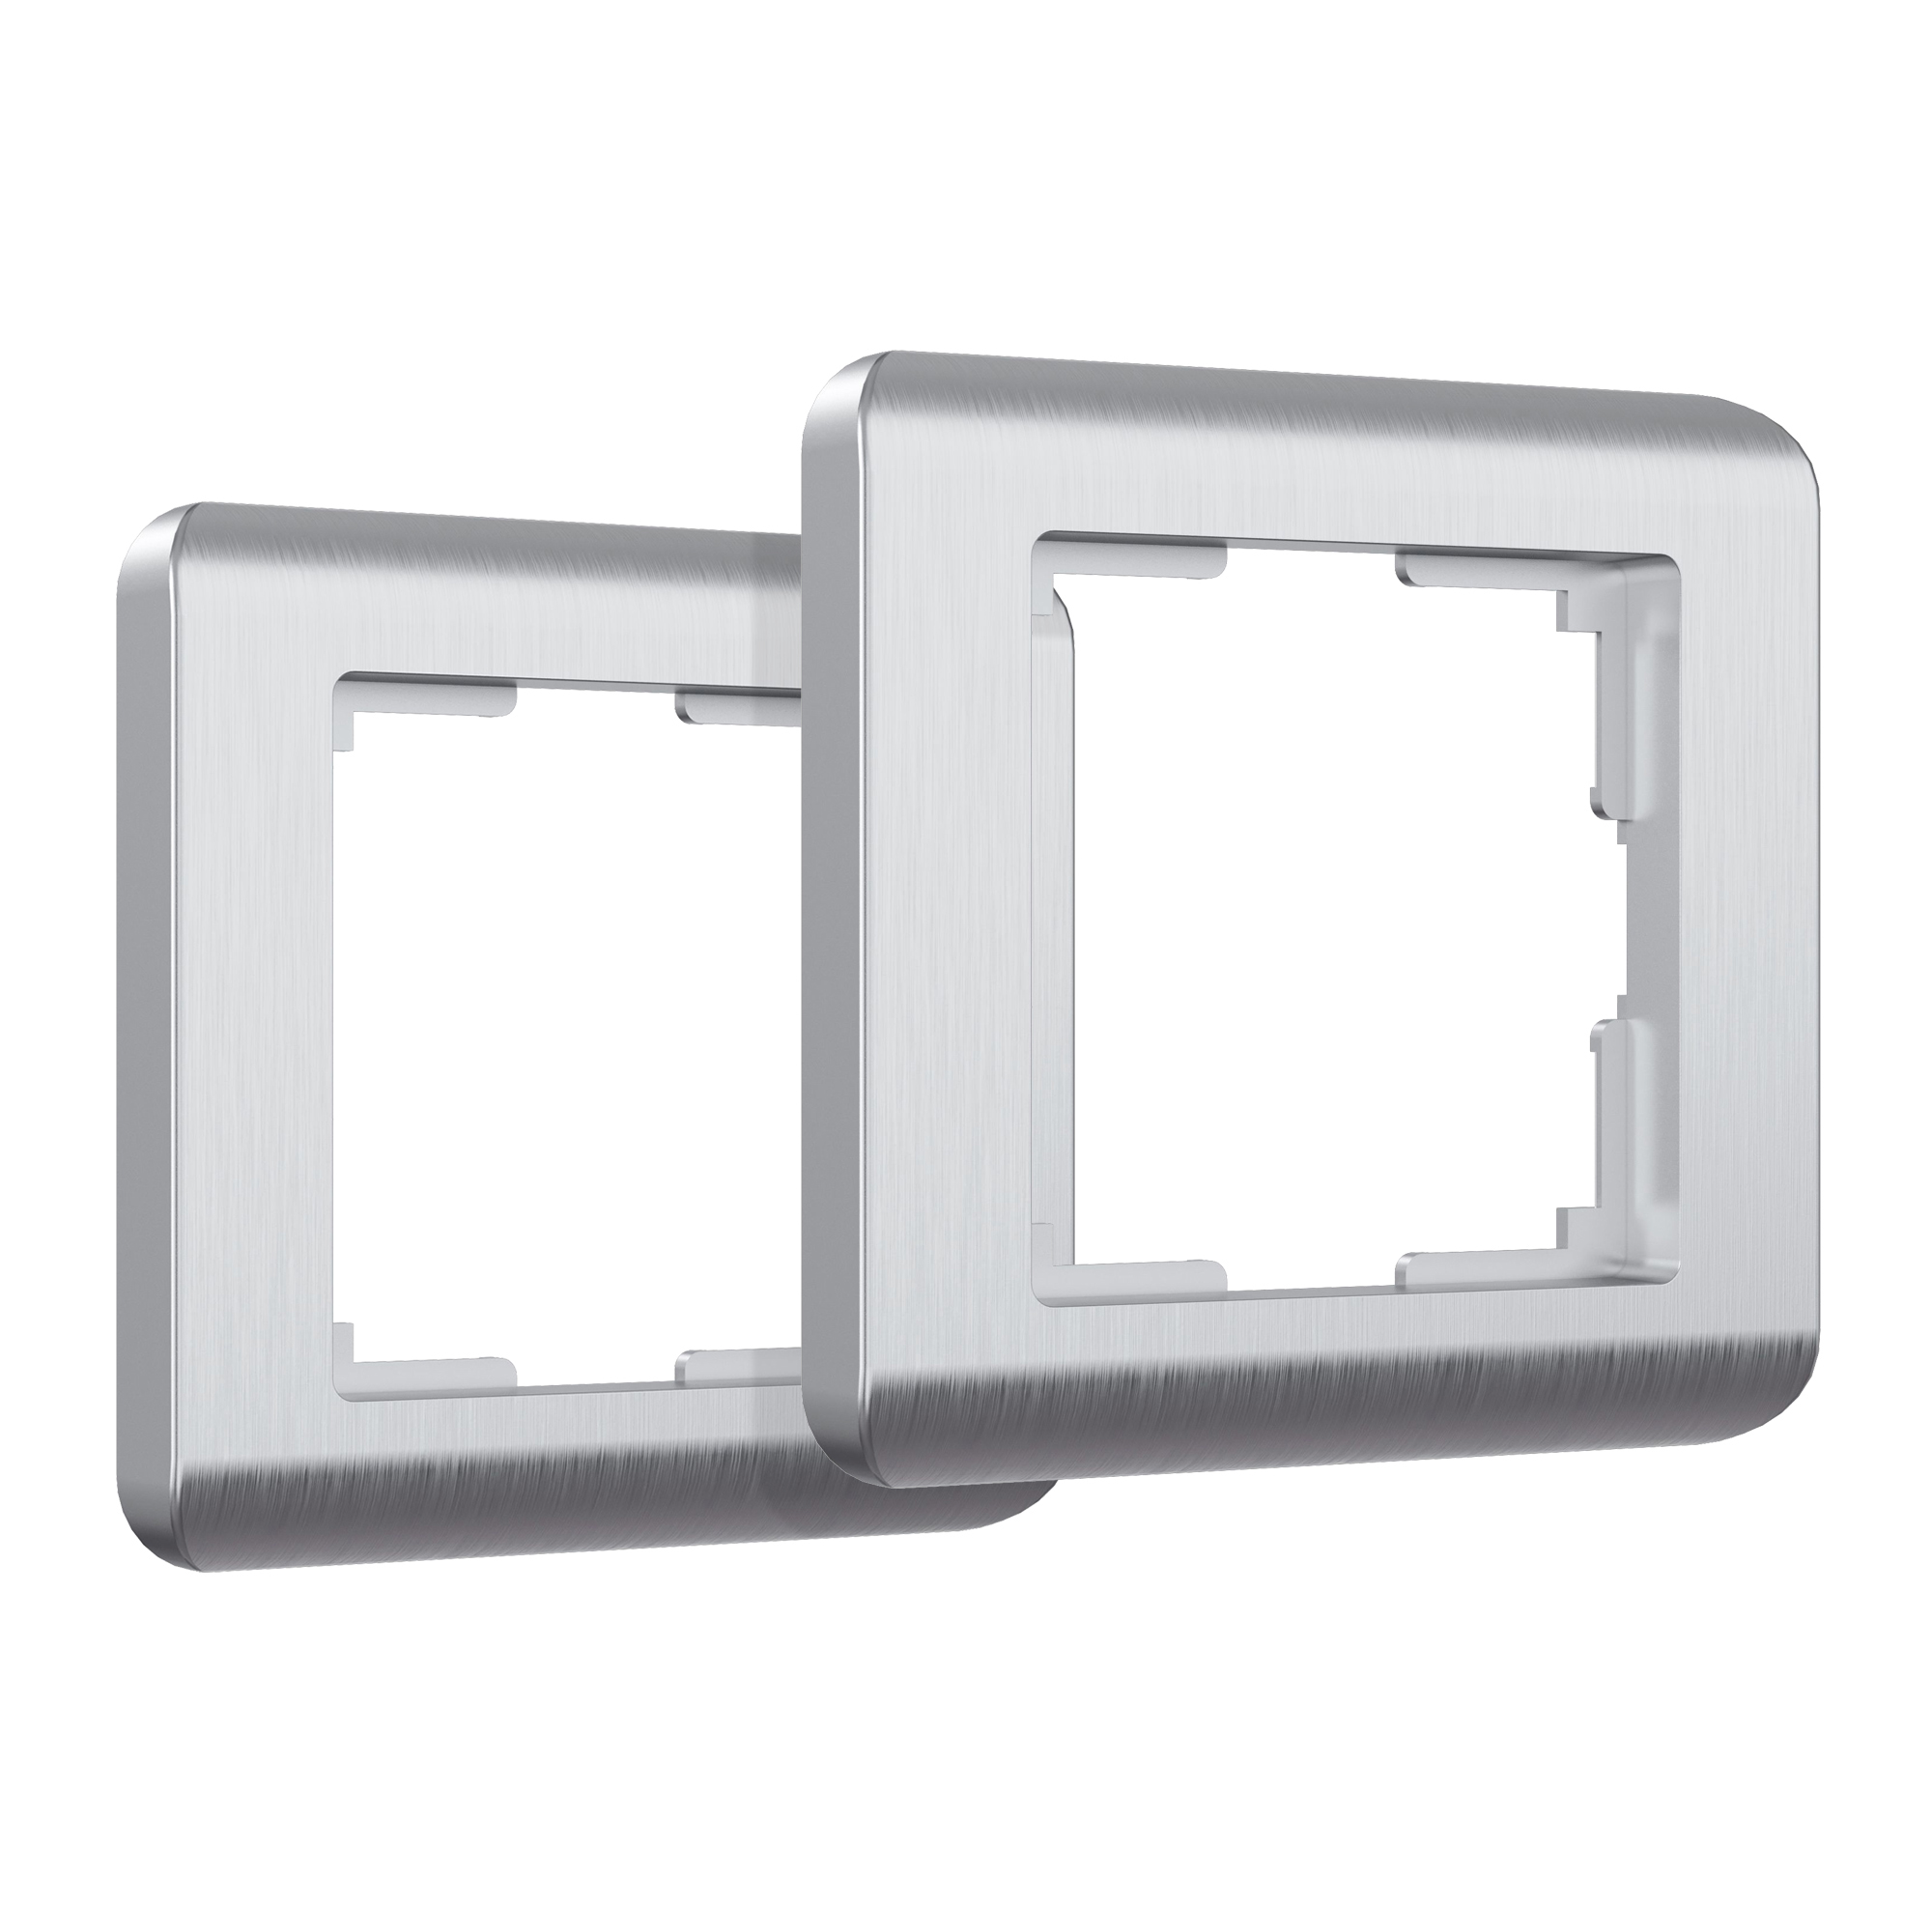 Рамка для розетки/выключателя на 1 пост (комплект 2 шт) Werkel Stream серебряный W0012106 комплект перламутровый отблеск